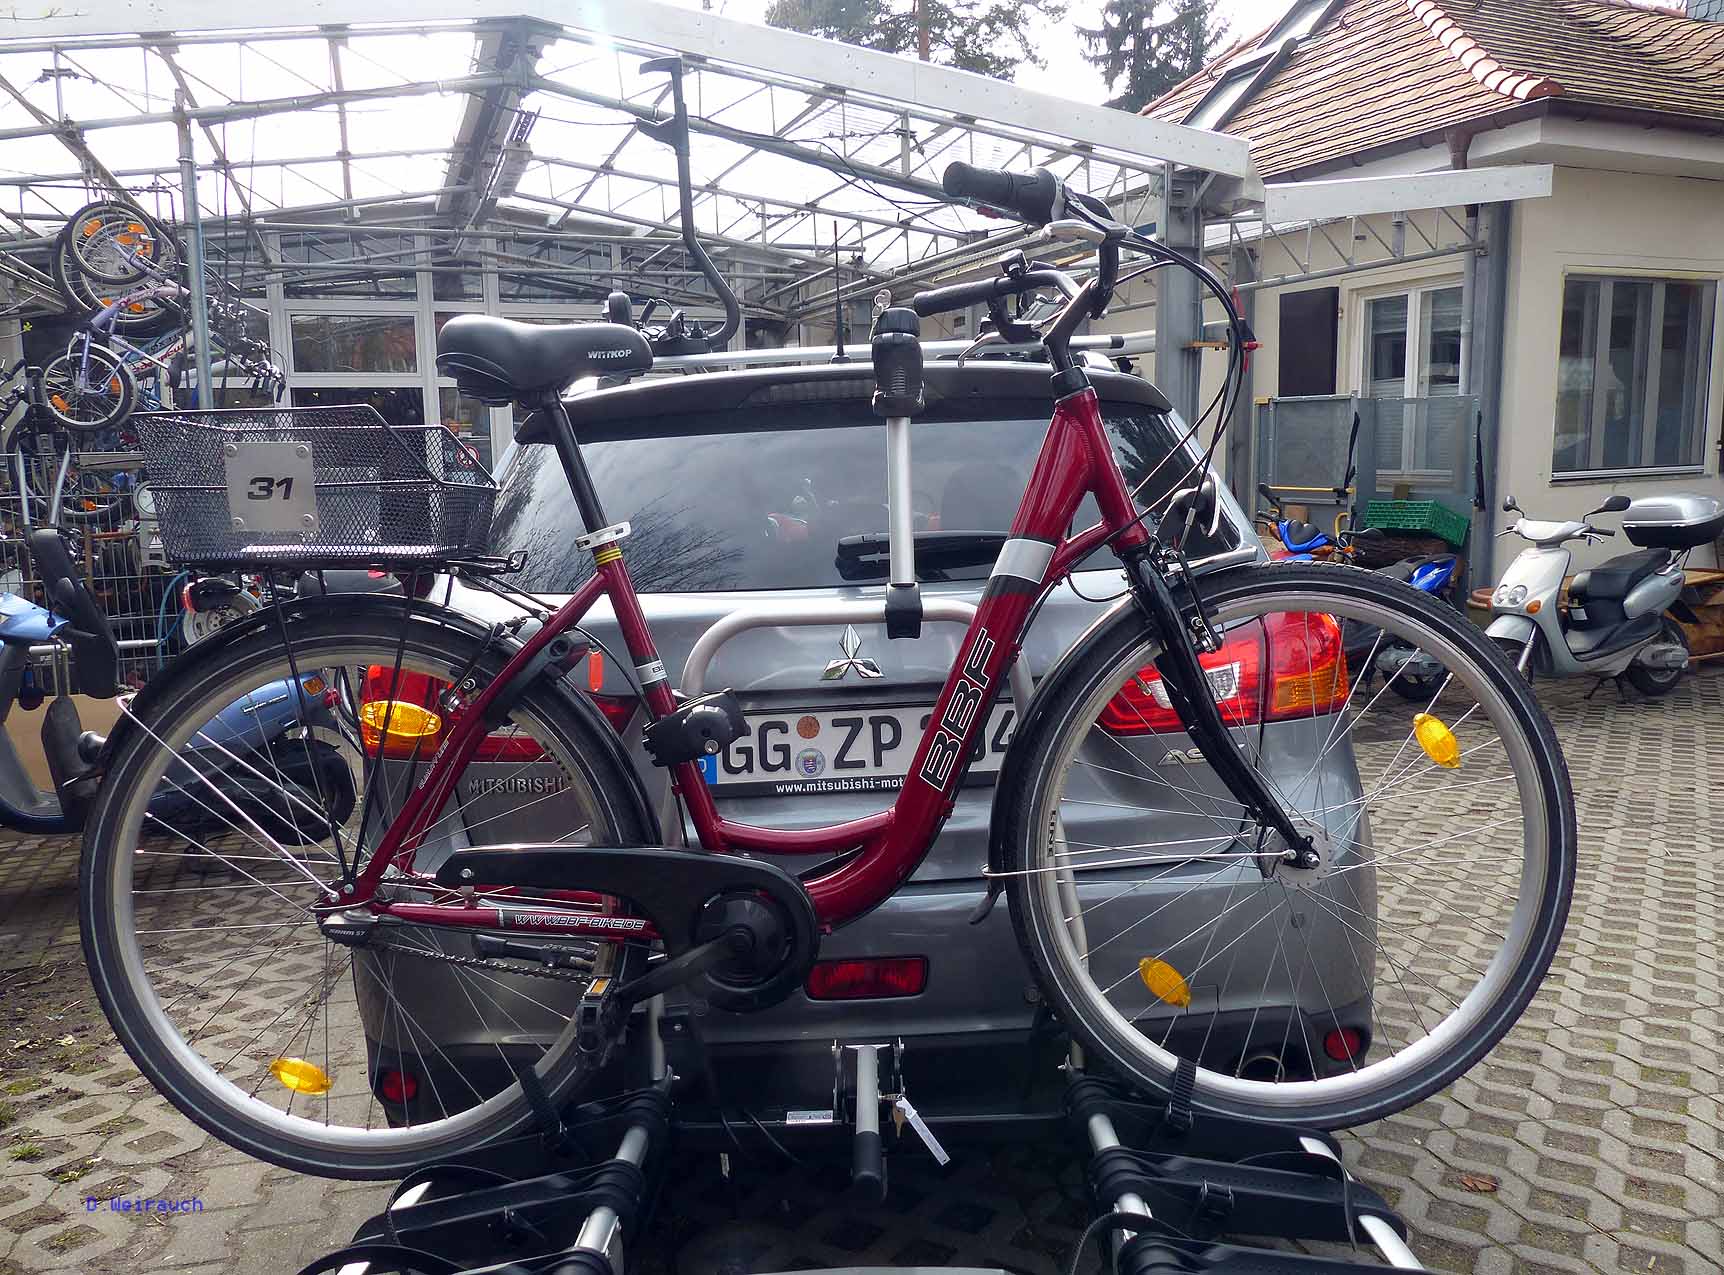 Anhängevorrichtung von Uebler am Mitsubishi ASX Fahrrad